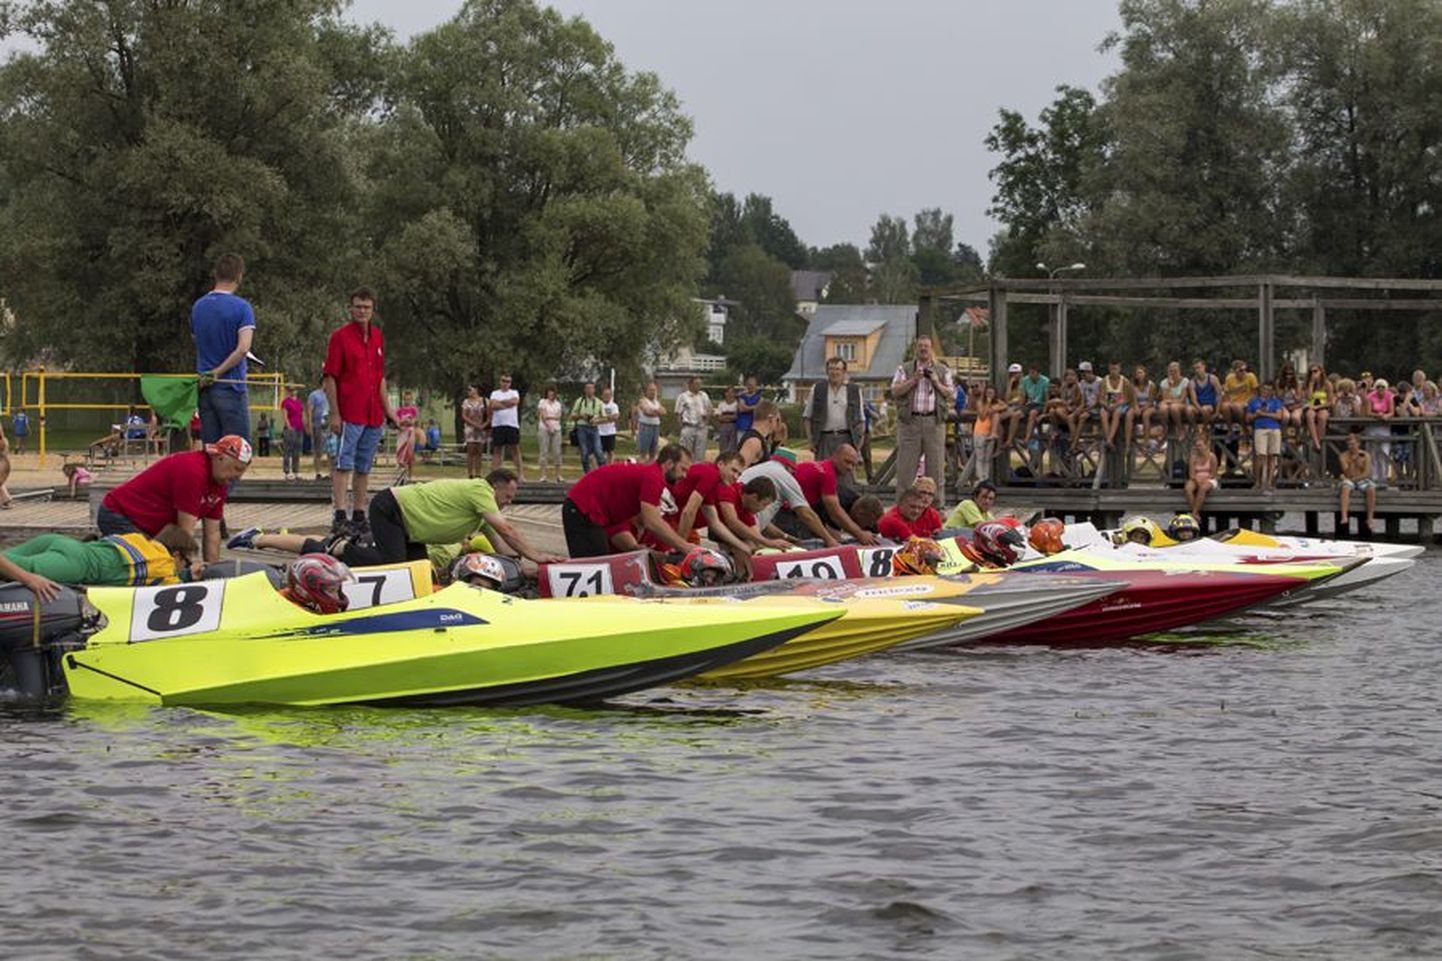 Homme algab Viljandi järvel järjekordne veemotospordivõistlus «Nordic Cup». Pilt on tehtud mullusel mõõduvõtul.